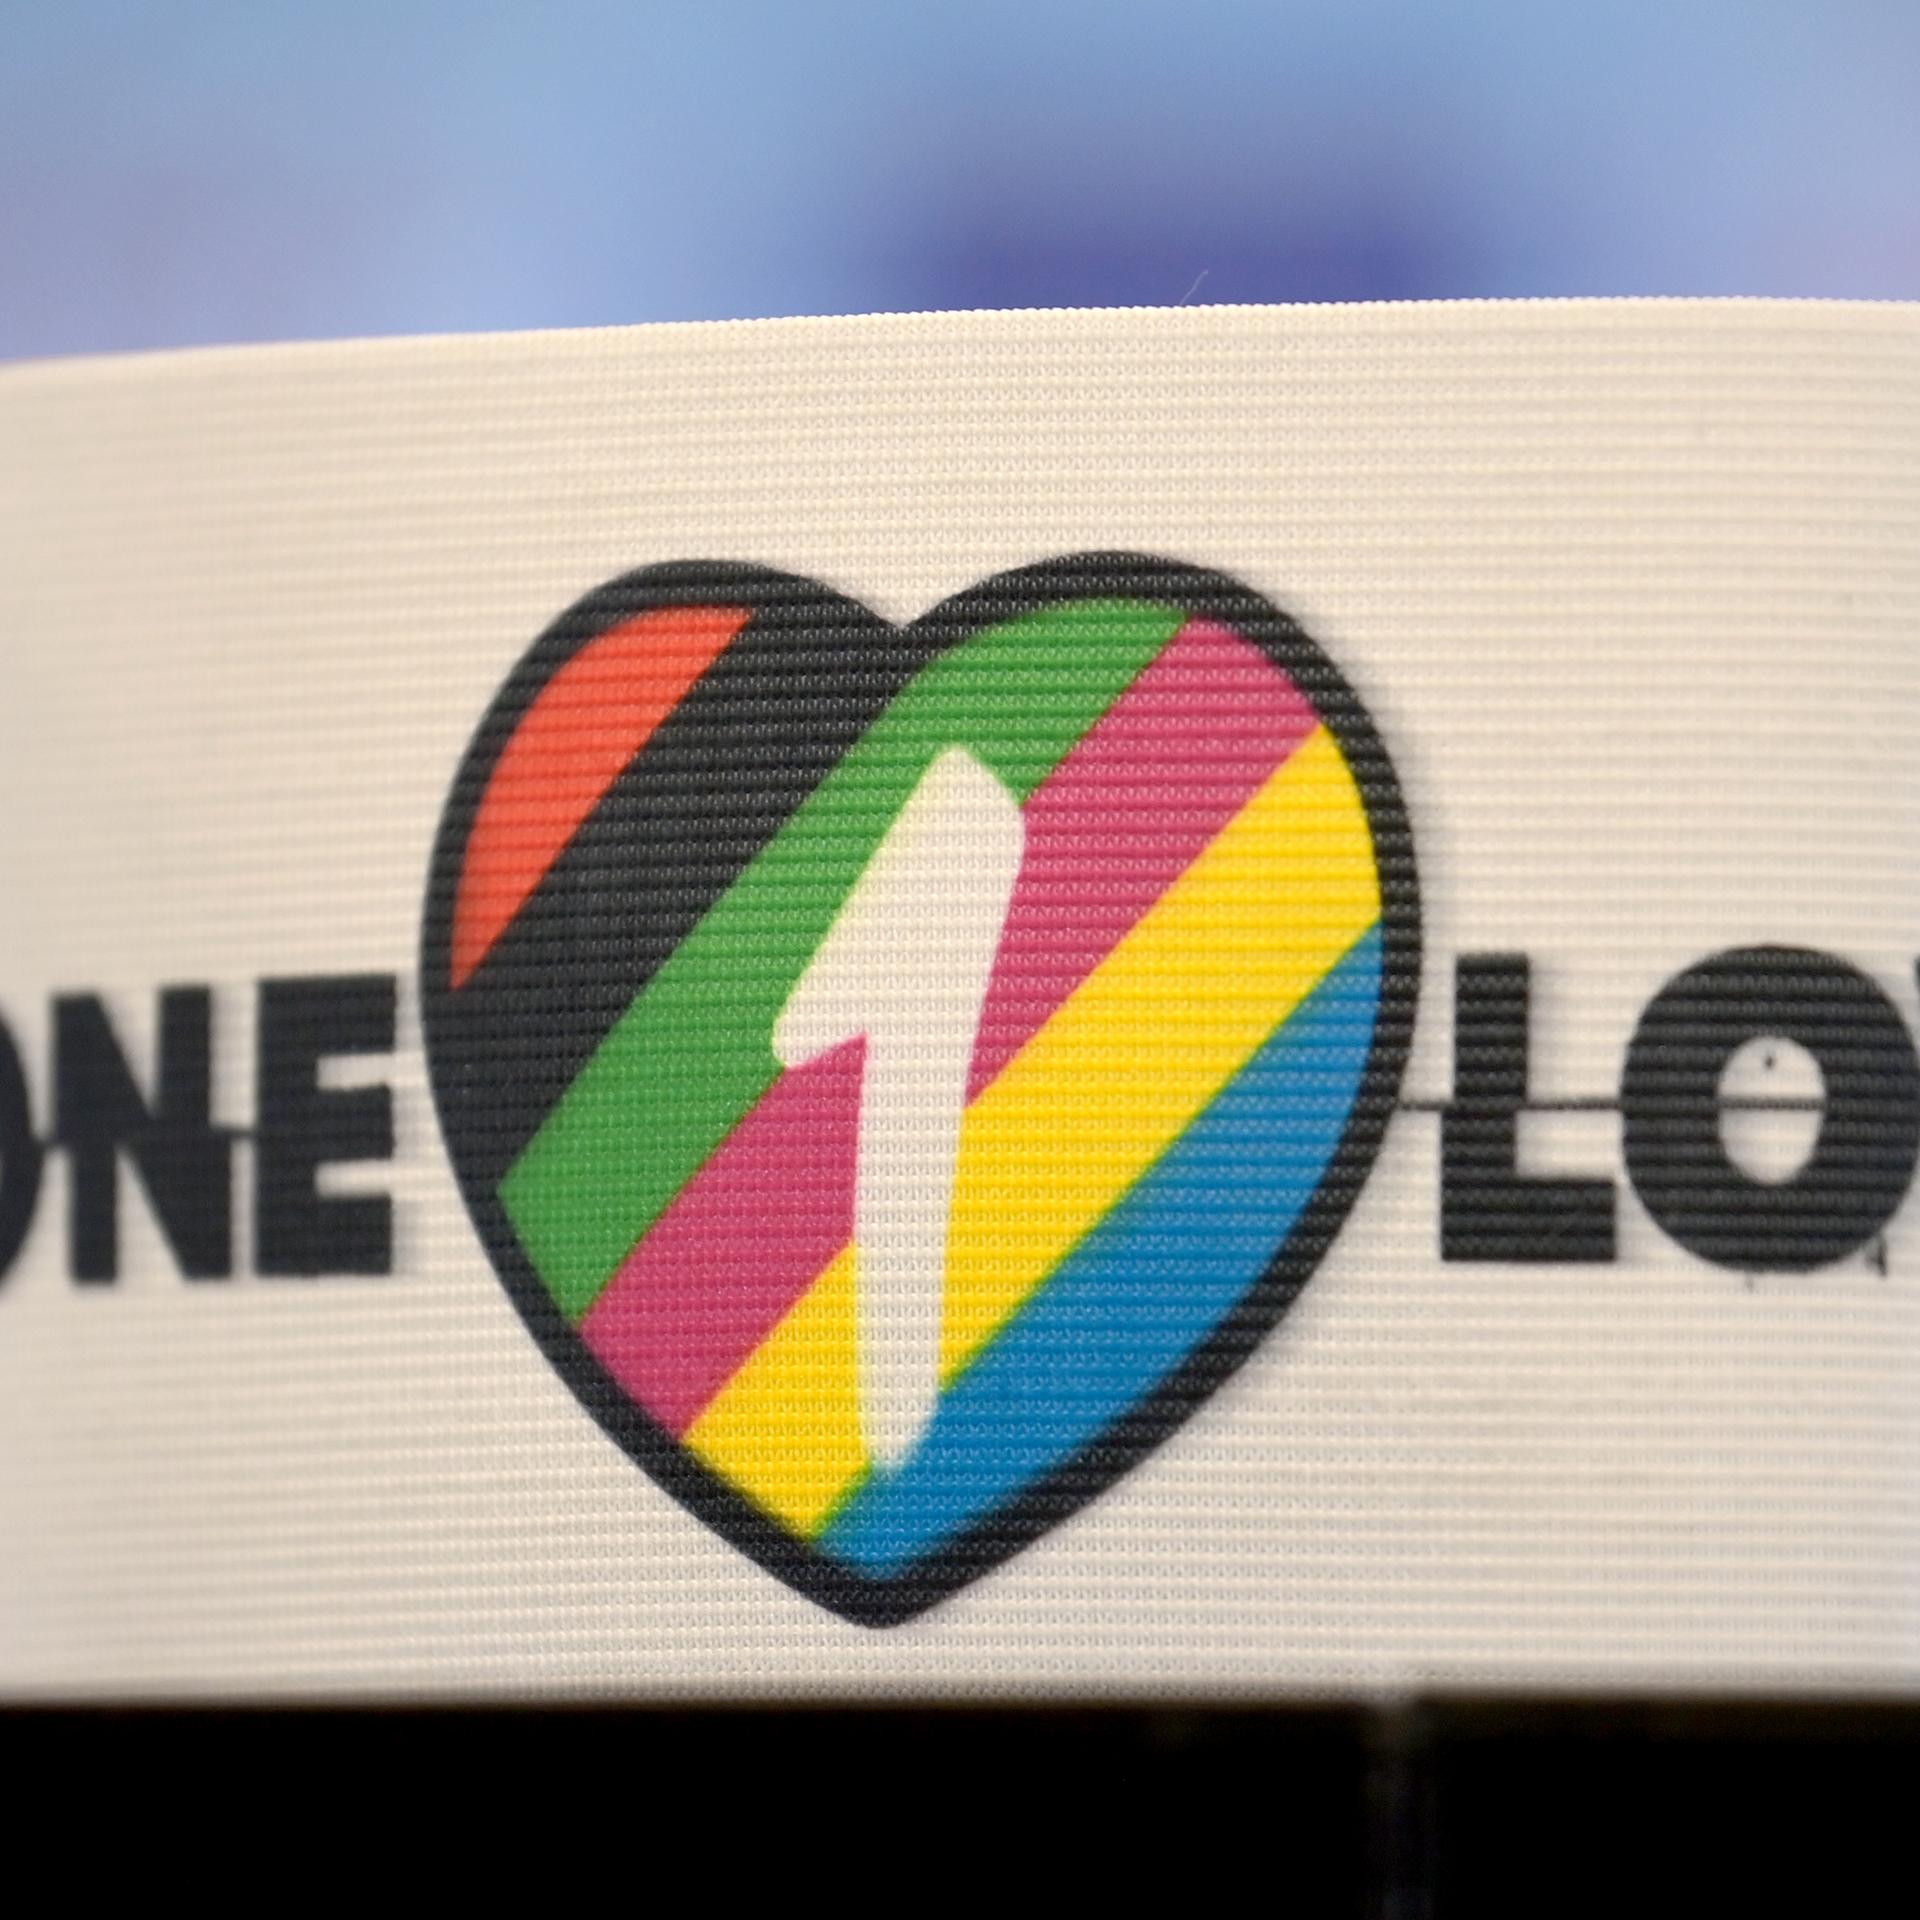 Die spezielle Kapitänsbinde als Zeichen gegen Diskriminierung und für Vielfalt liegt auf einem Tisch. Diese ziert ein Herz in bunten Farben, die für Vielfalt stehen, sowie die Aufschrift 'One Love'.